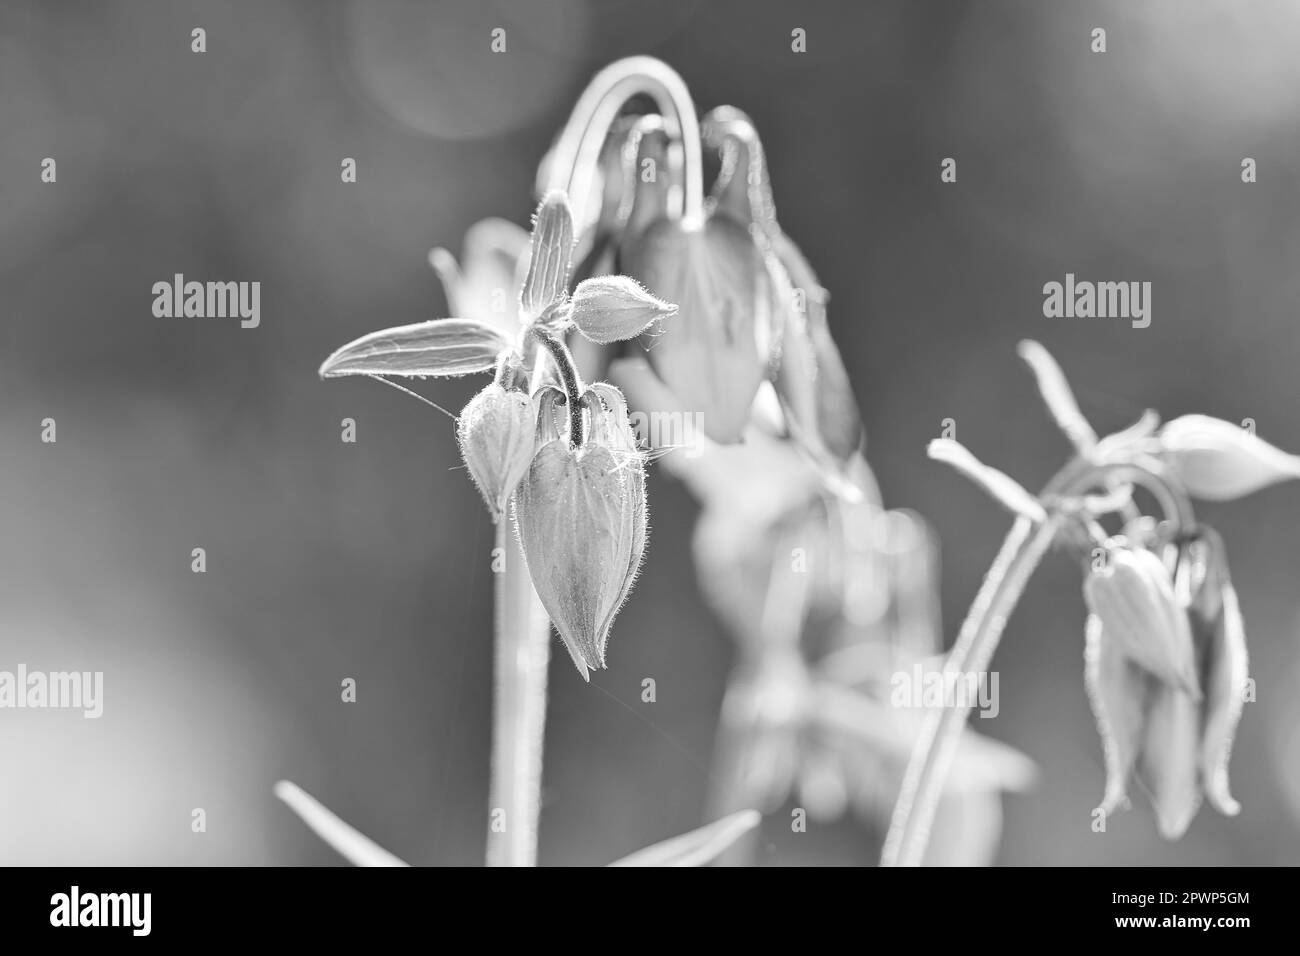 orchidée sauvage sur un pré. Prise de vue en noir et blanc. Photo de fleur de la nature. Photo paysage Banque D'Images